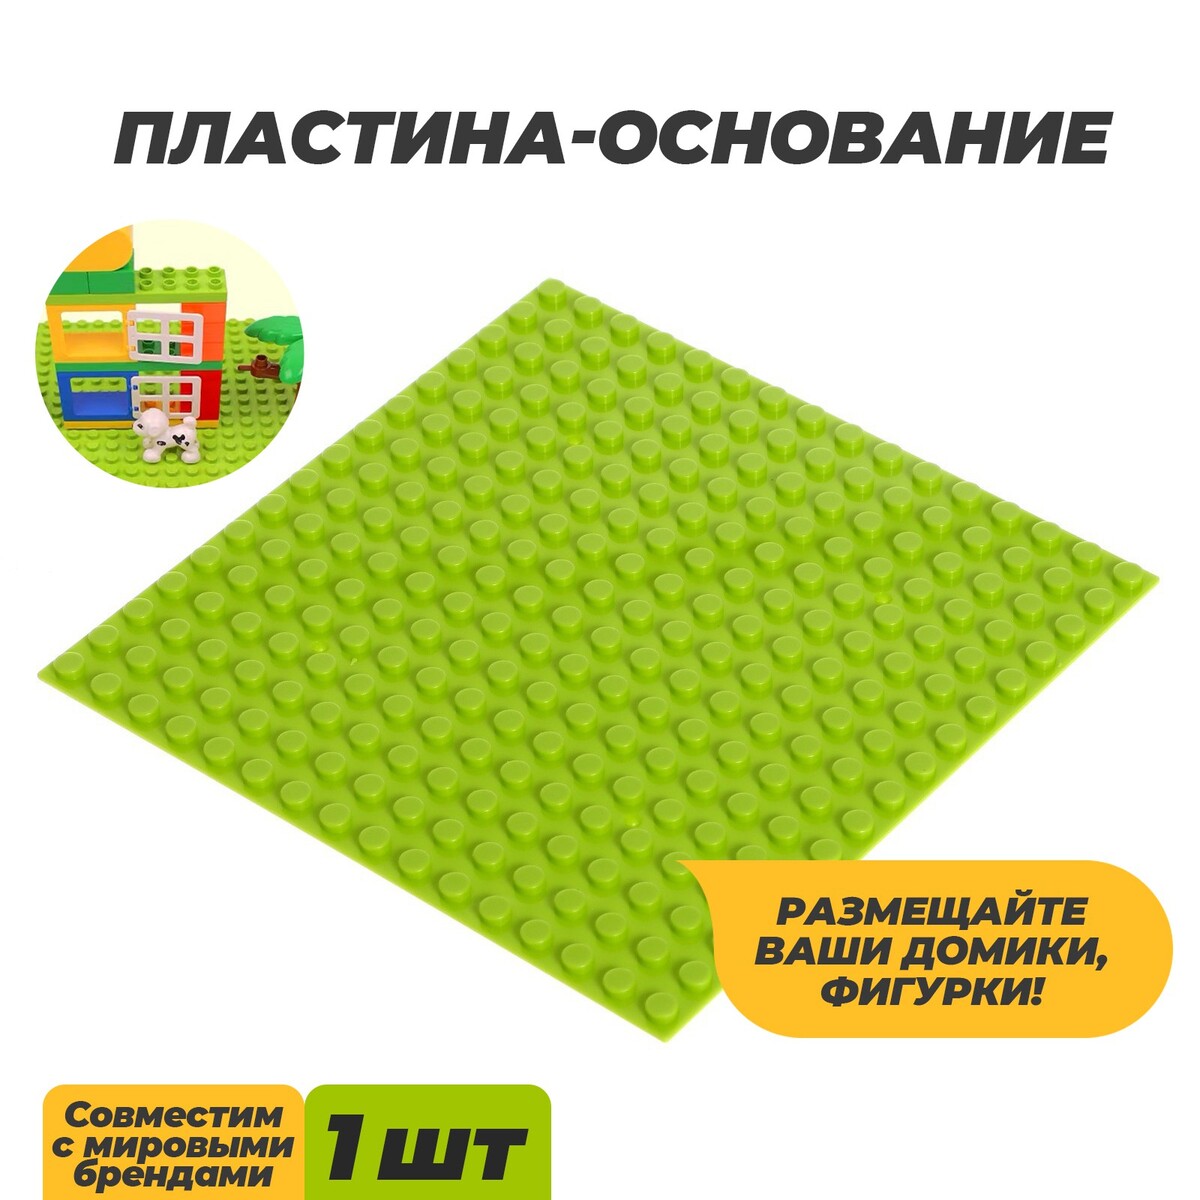 Пластина-основание для конструктора, 12,8 × 12,8 см, цвет салатовый пластина основание для конструктора 25 5 х 12 5 см зеленый